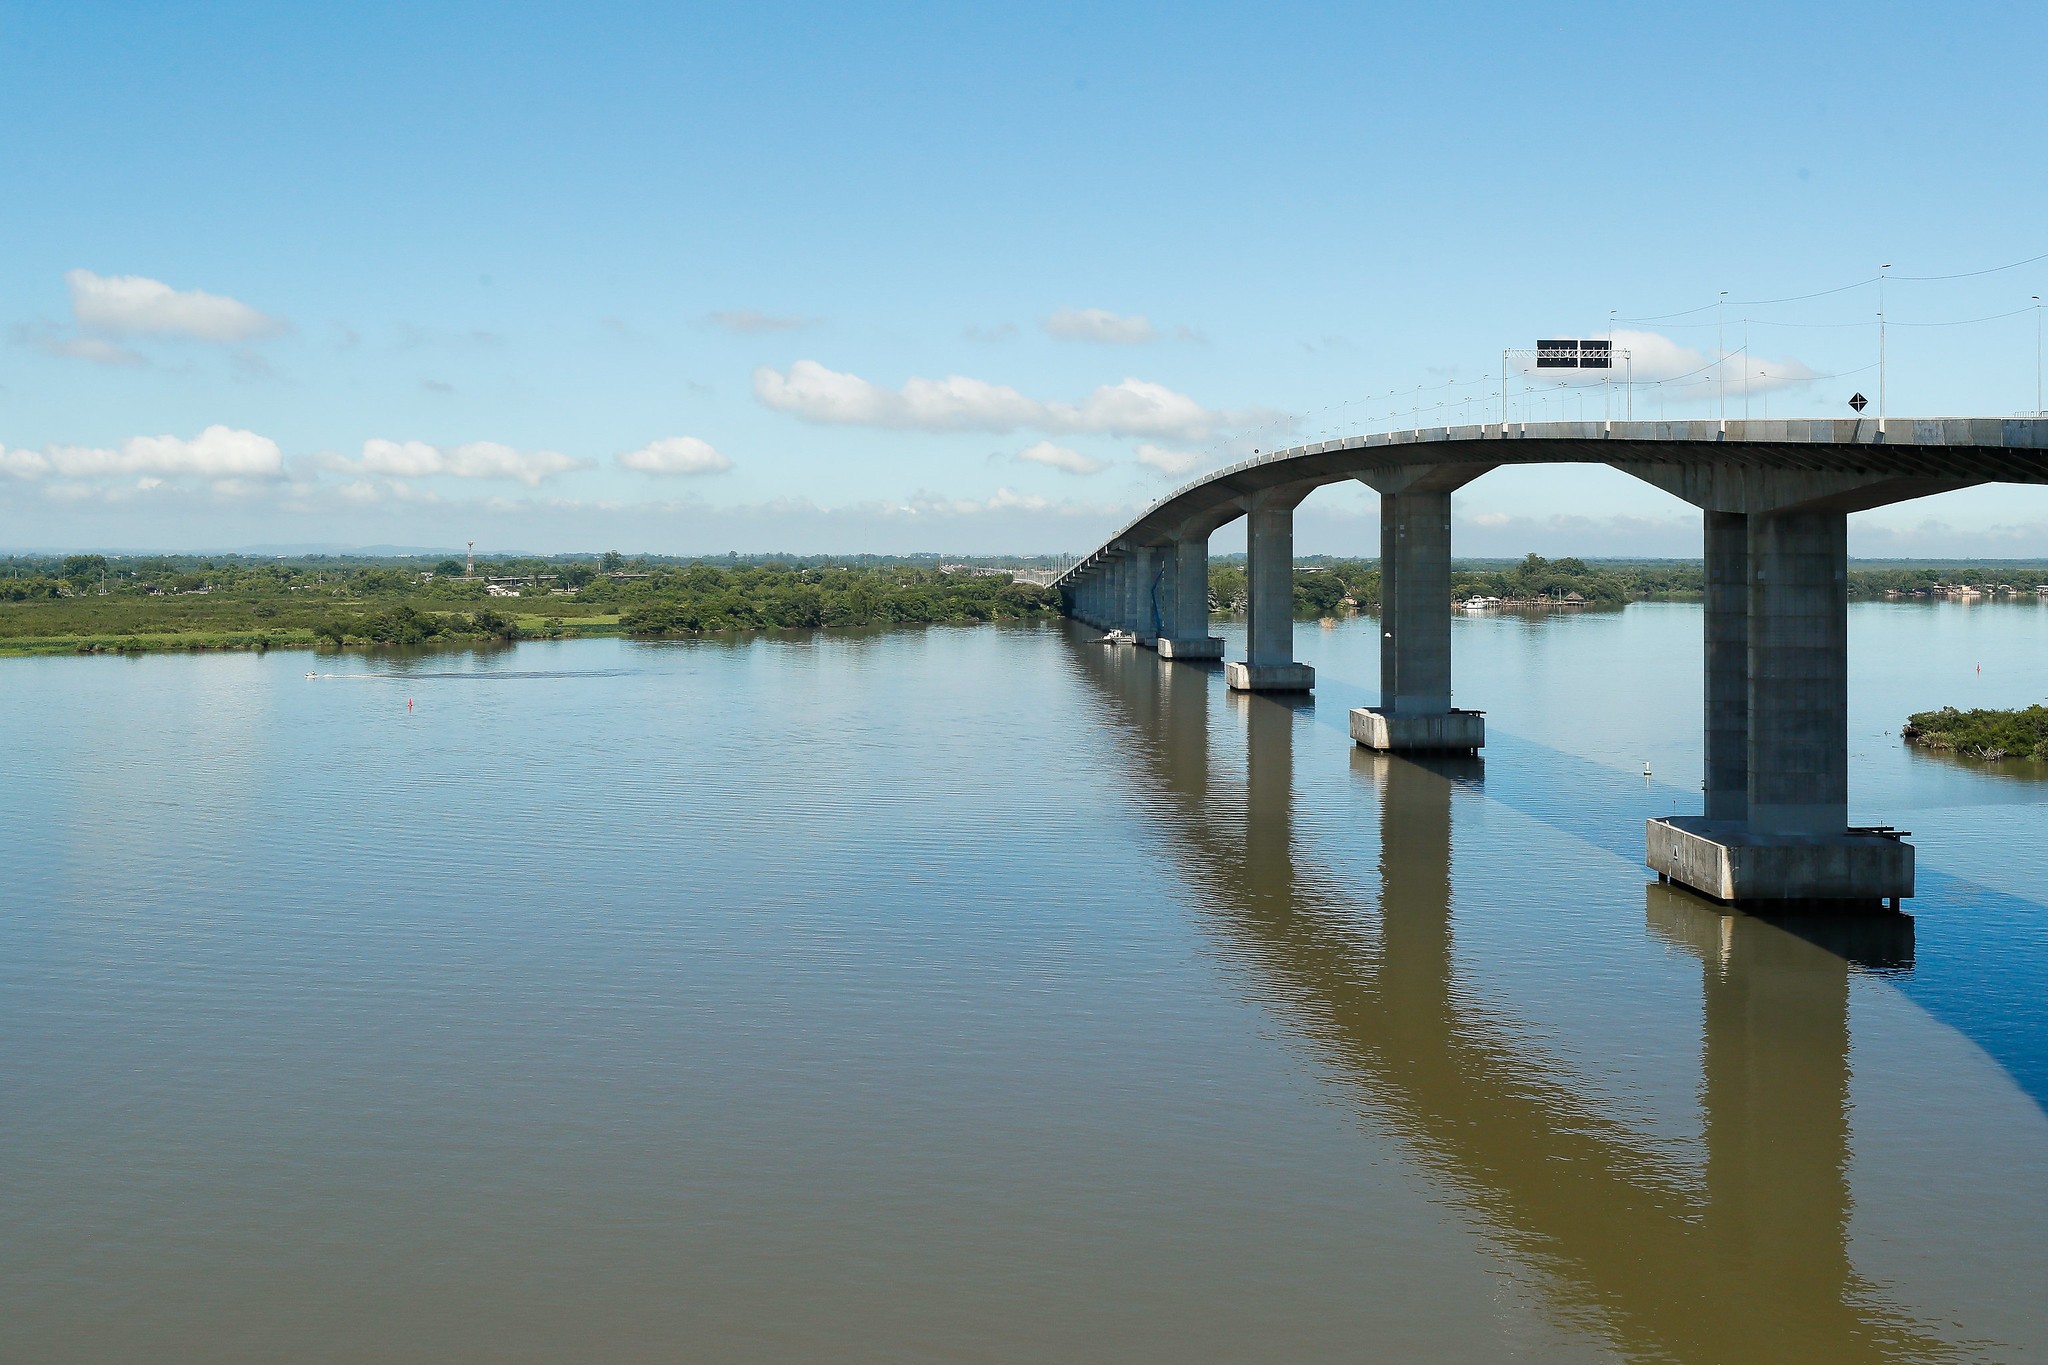 Trânsito na ponte do Rio Jacuí, entre Porto Alegre e Eldorado do Sul, terá interdição parcial neste sábado, diz DNIT